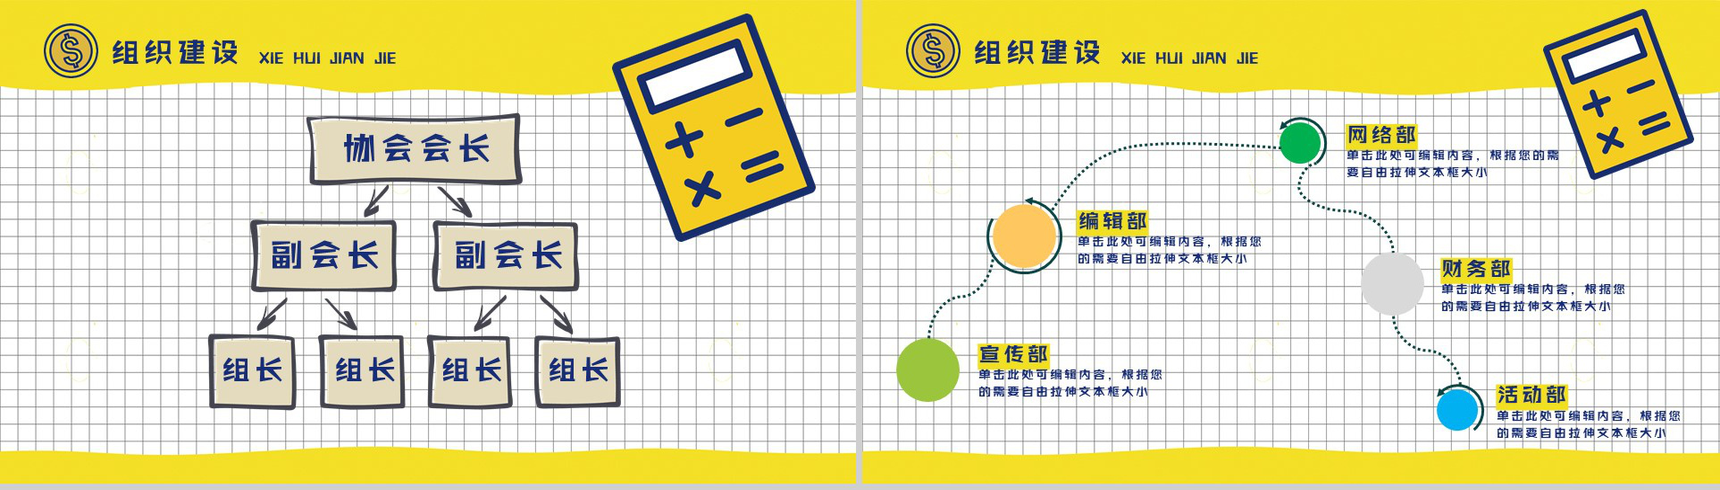 黄色扁平化卡通商务社团招新计划活动方案招聘PPT模板-8